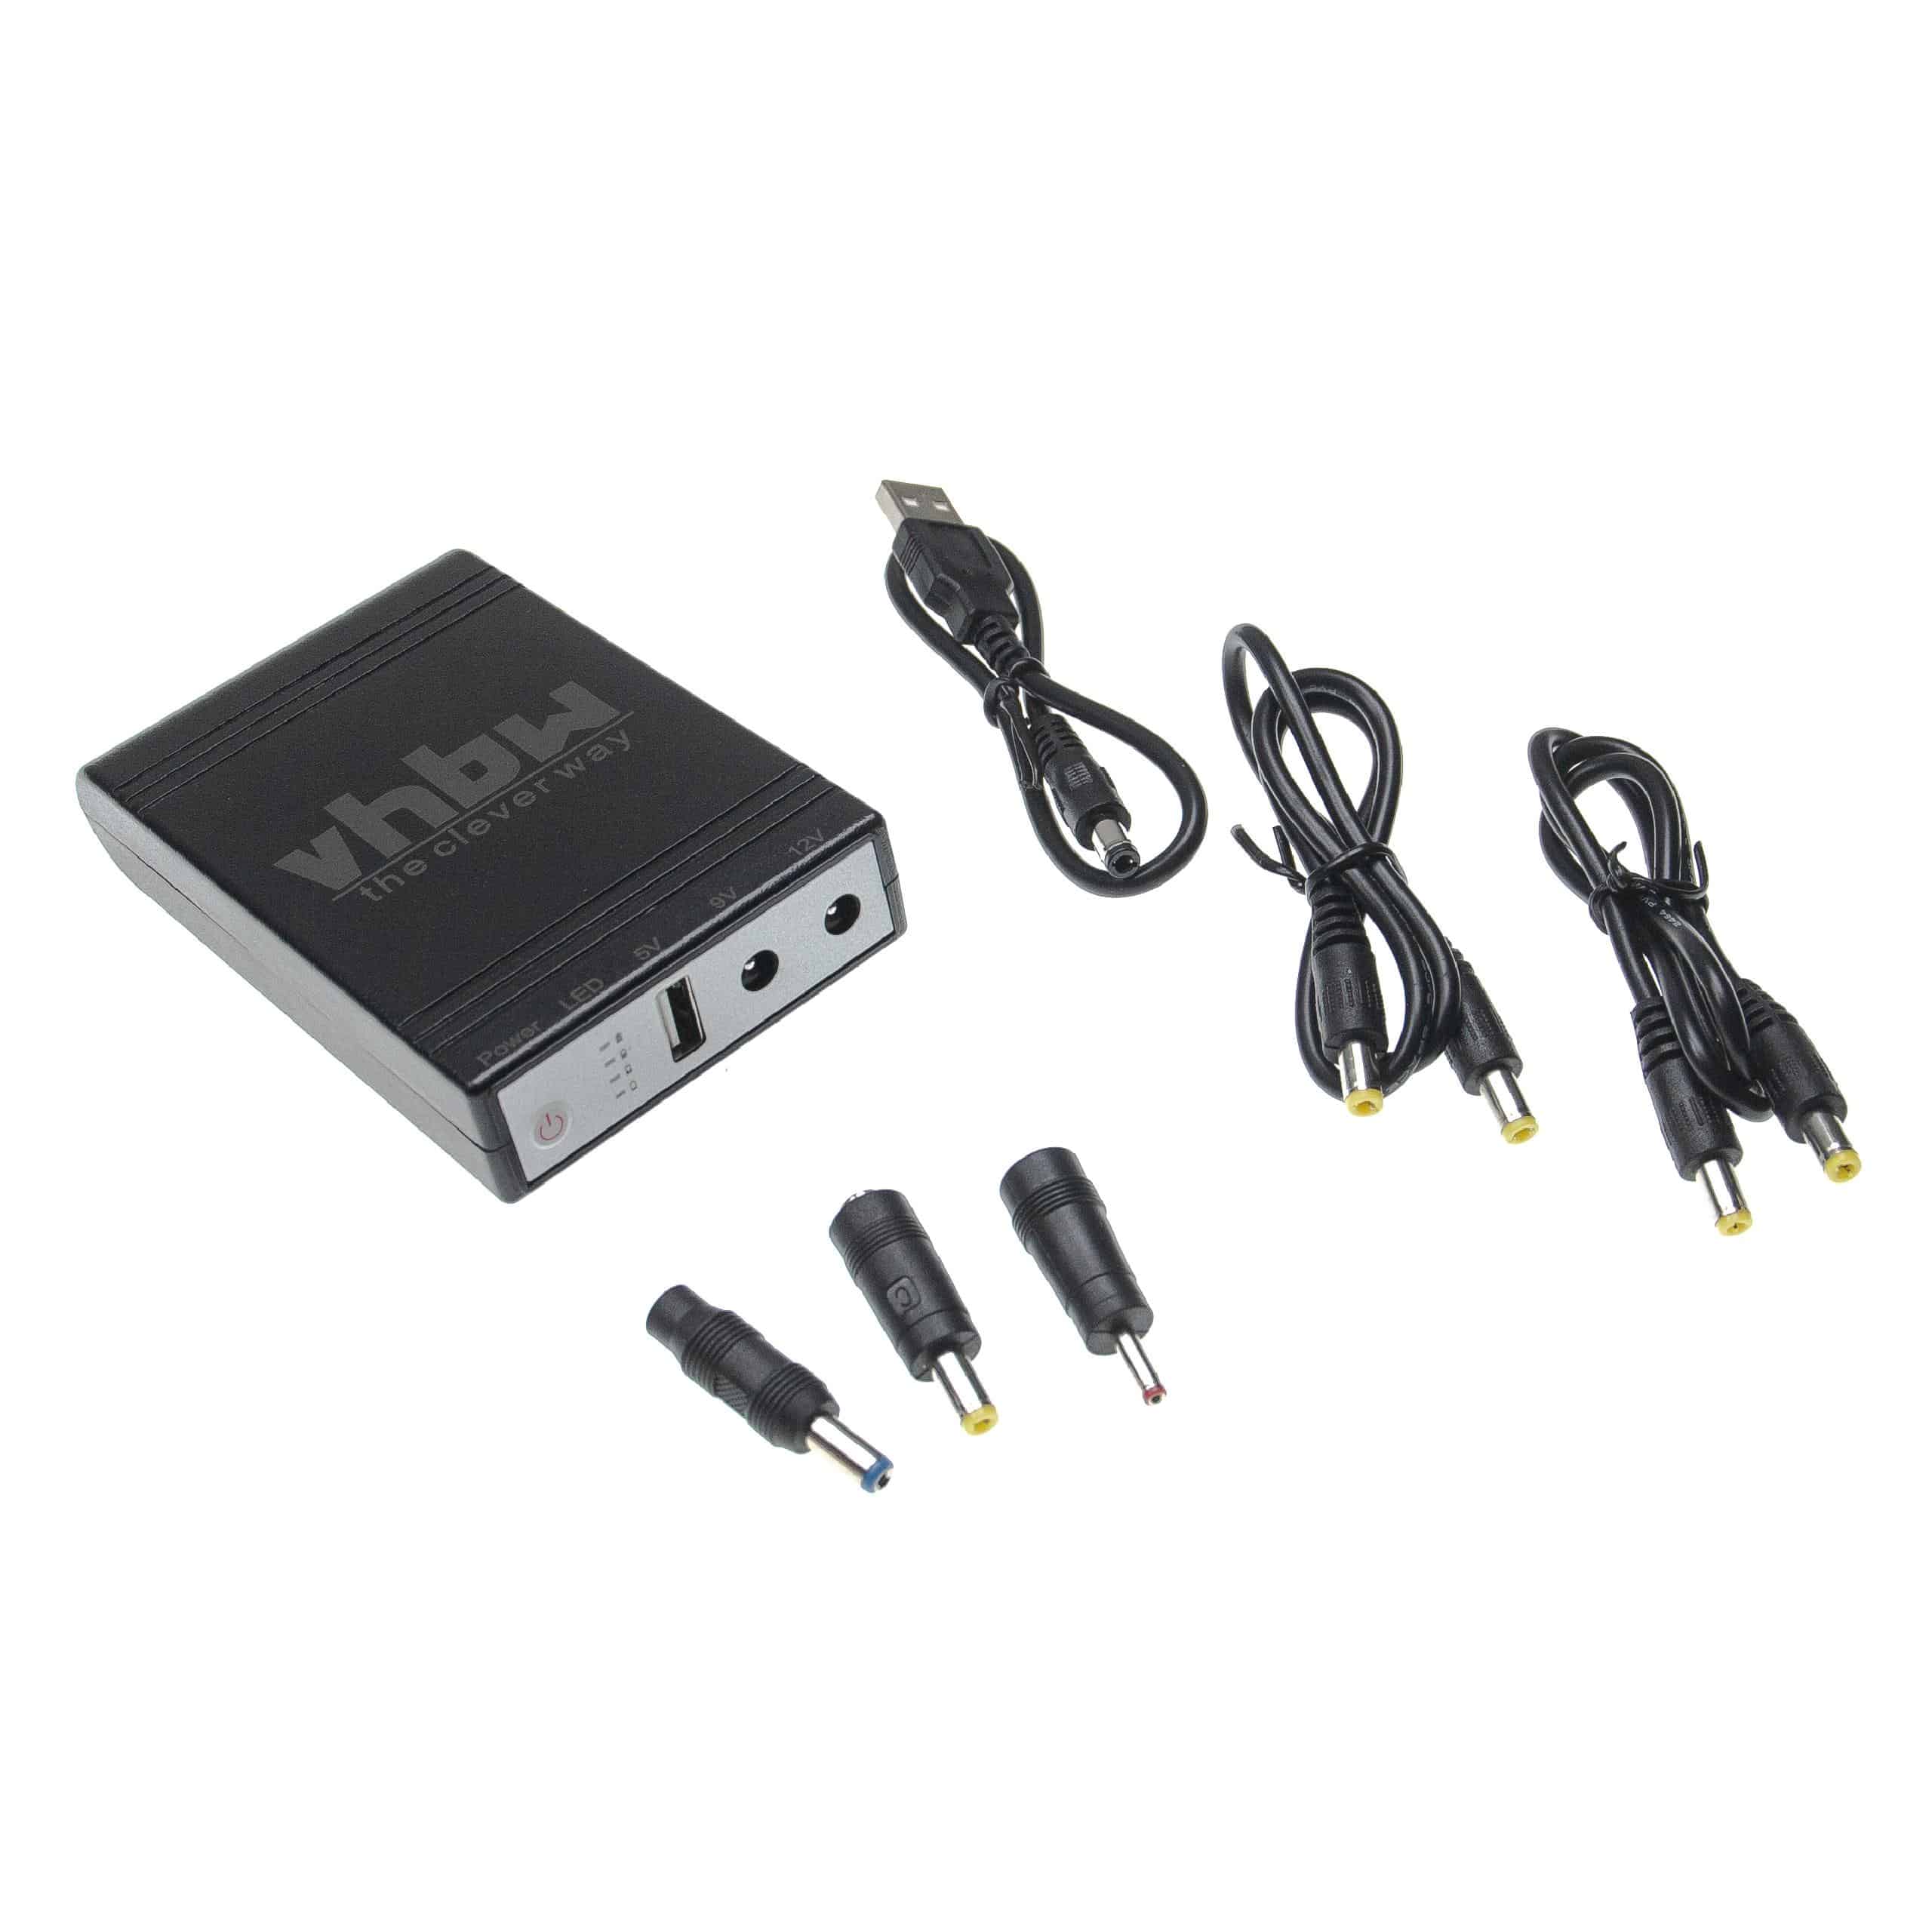 SAI Mini para router, cámaras IP, módems, ordenadores, etc. - USB 5 V / CC 9 V / DC 12 V, 1,0 A